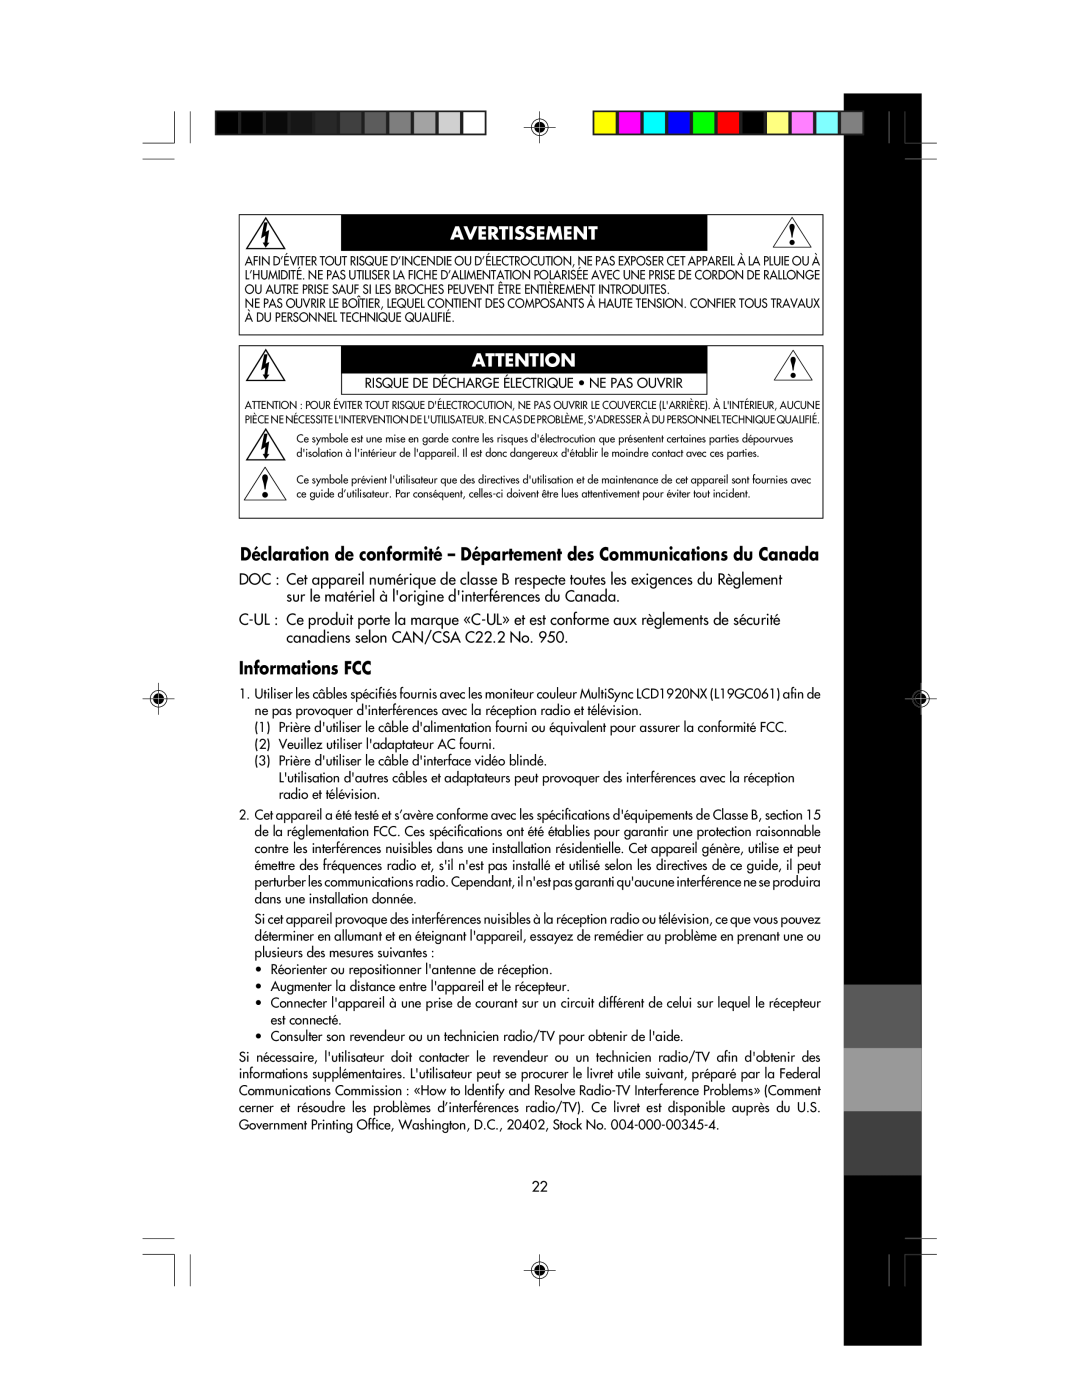 NEC LCD1920NX manual Avertissement, Déclaration de conformité - Département des Communications du Canada, Informations FCC 